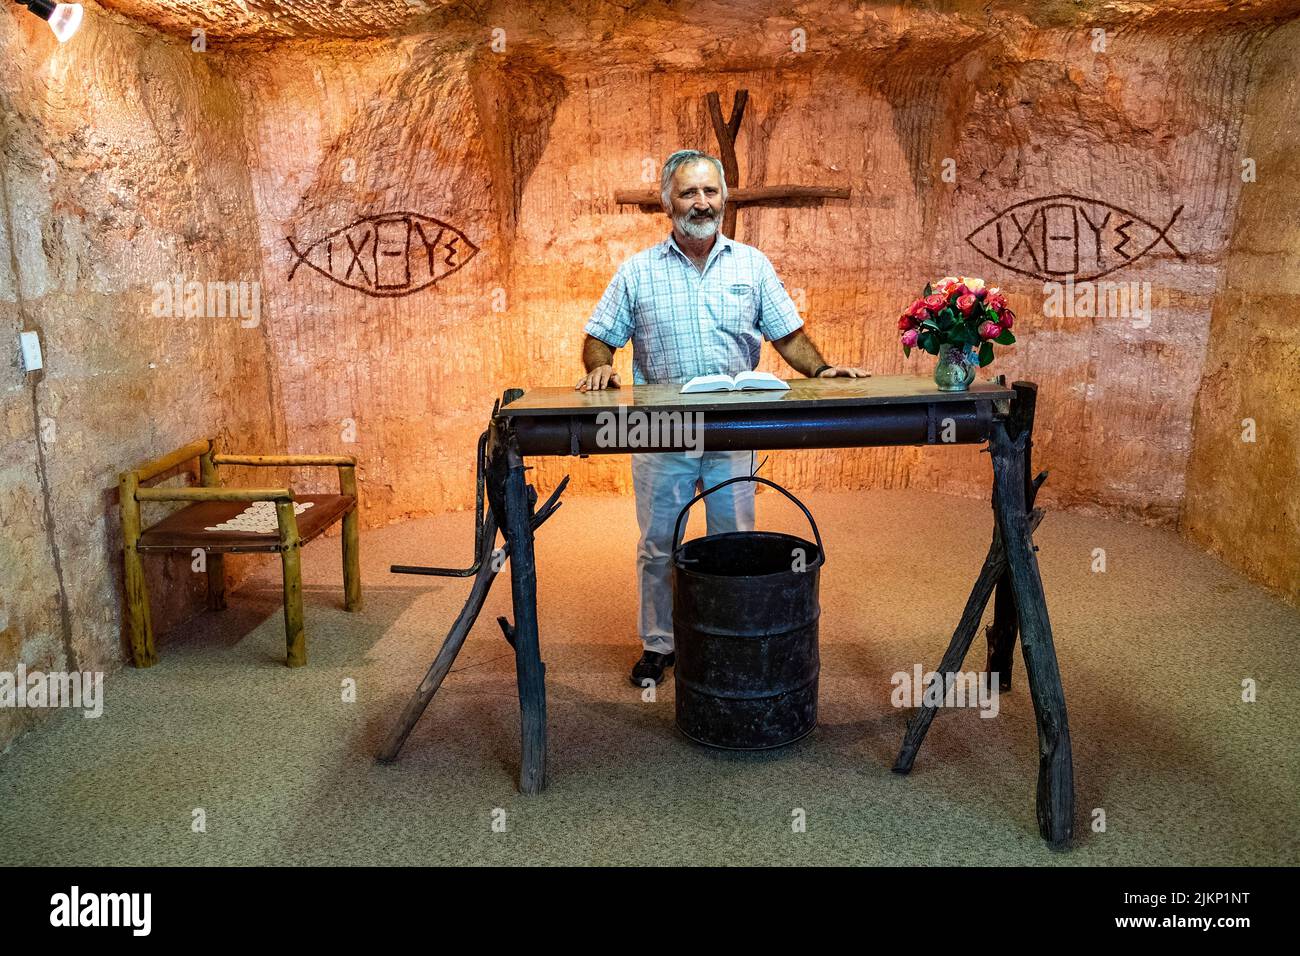 Un prêtre anglican dans l'église souterraine de Catacomb, dans la ville minière d'opale de Coober Pedy, en Australie méridionale Banque D'Images